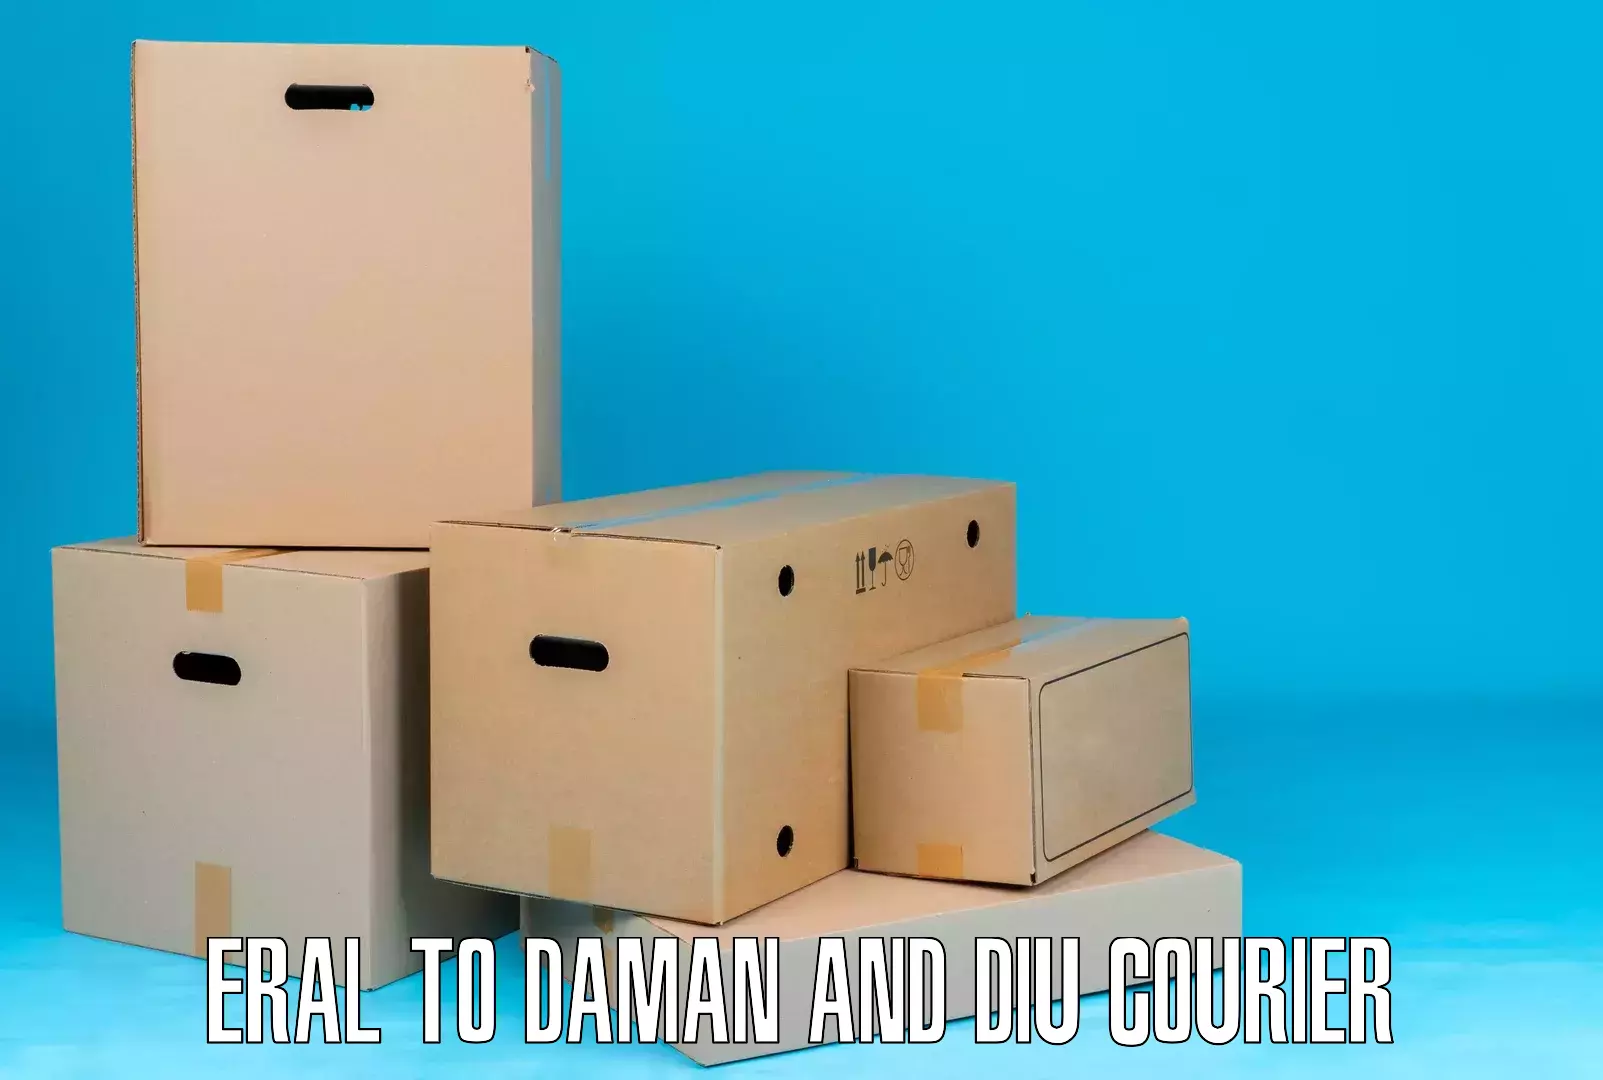 Express logistics service Eral to Daman and Diu